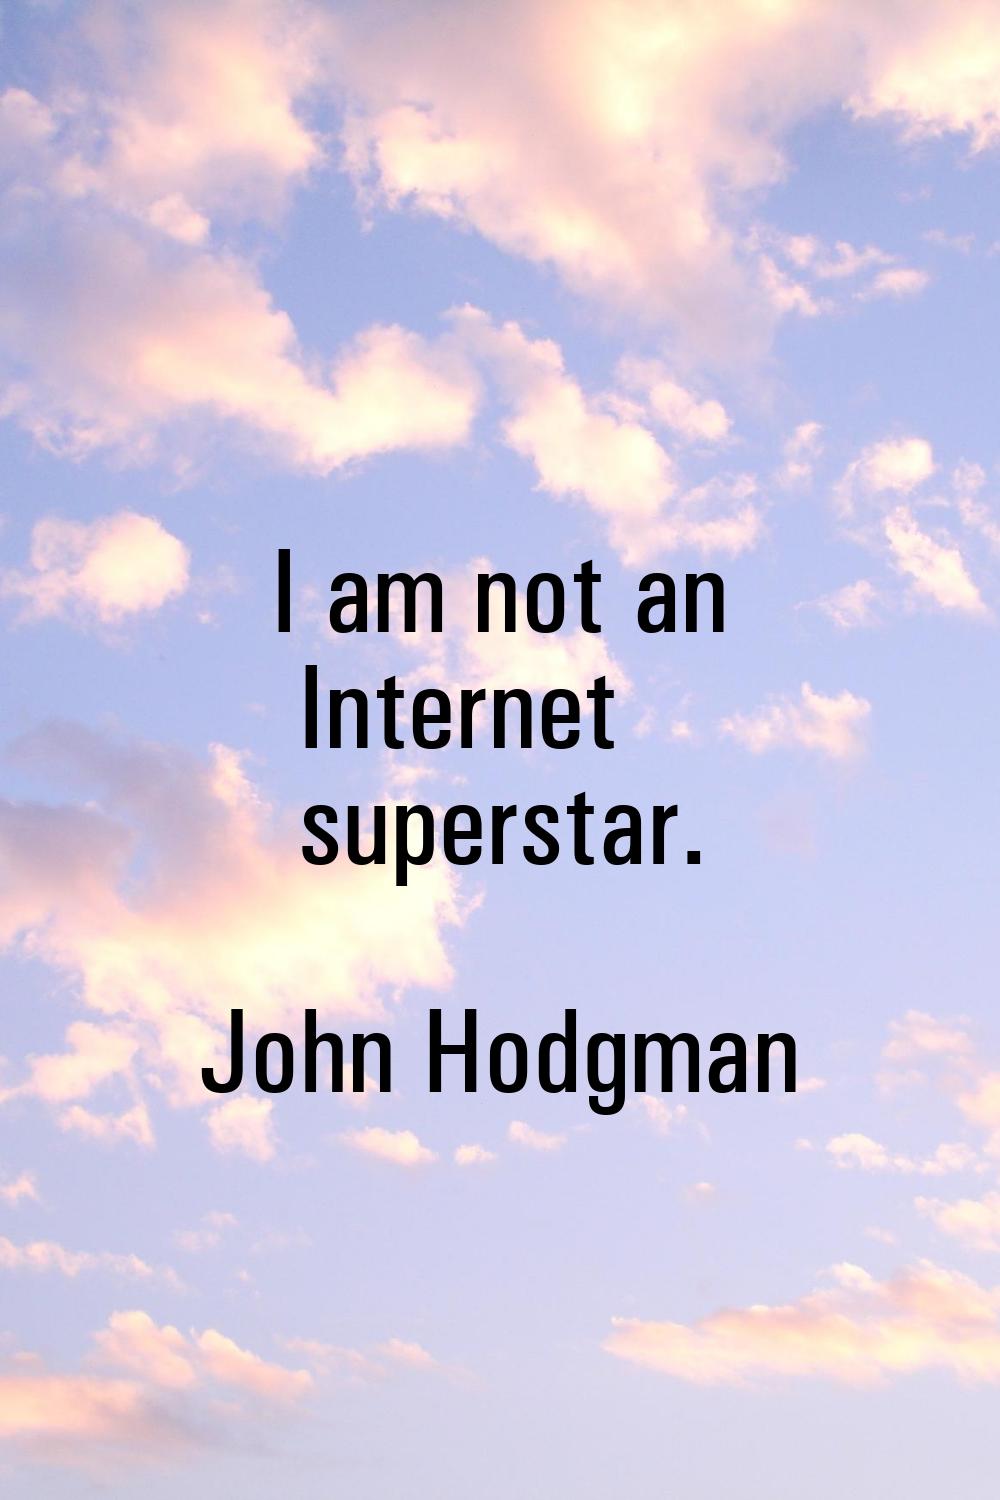 I am not an Internet superstar.